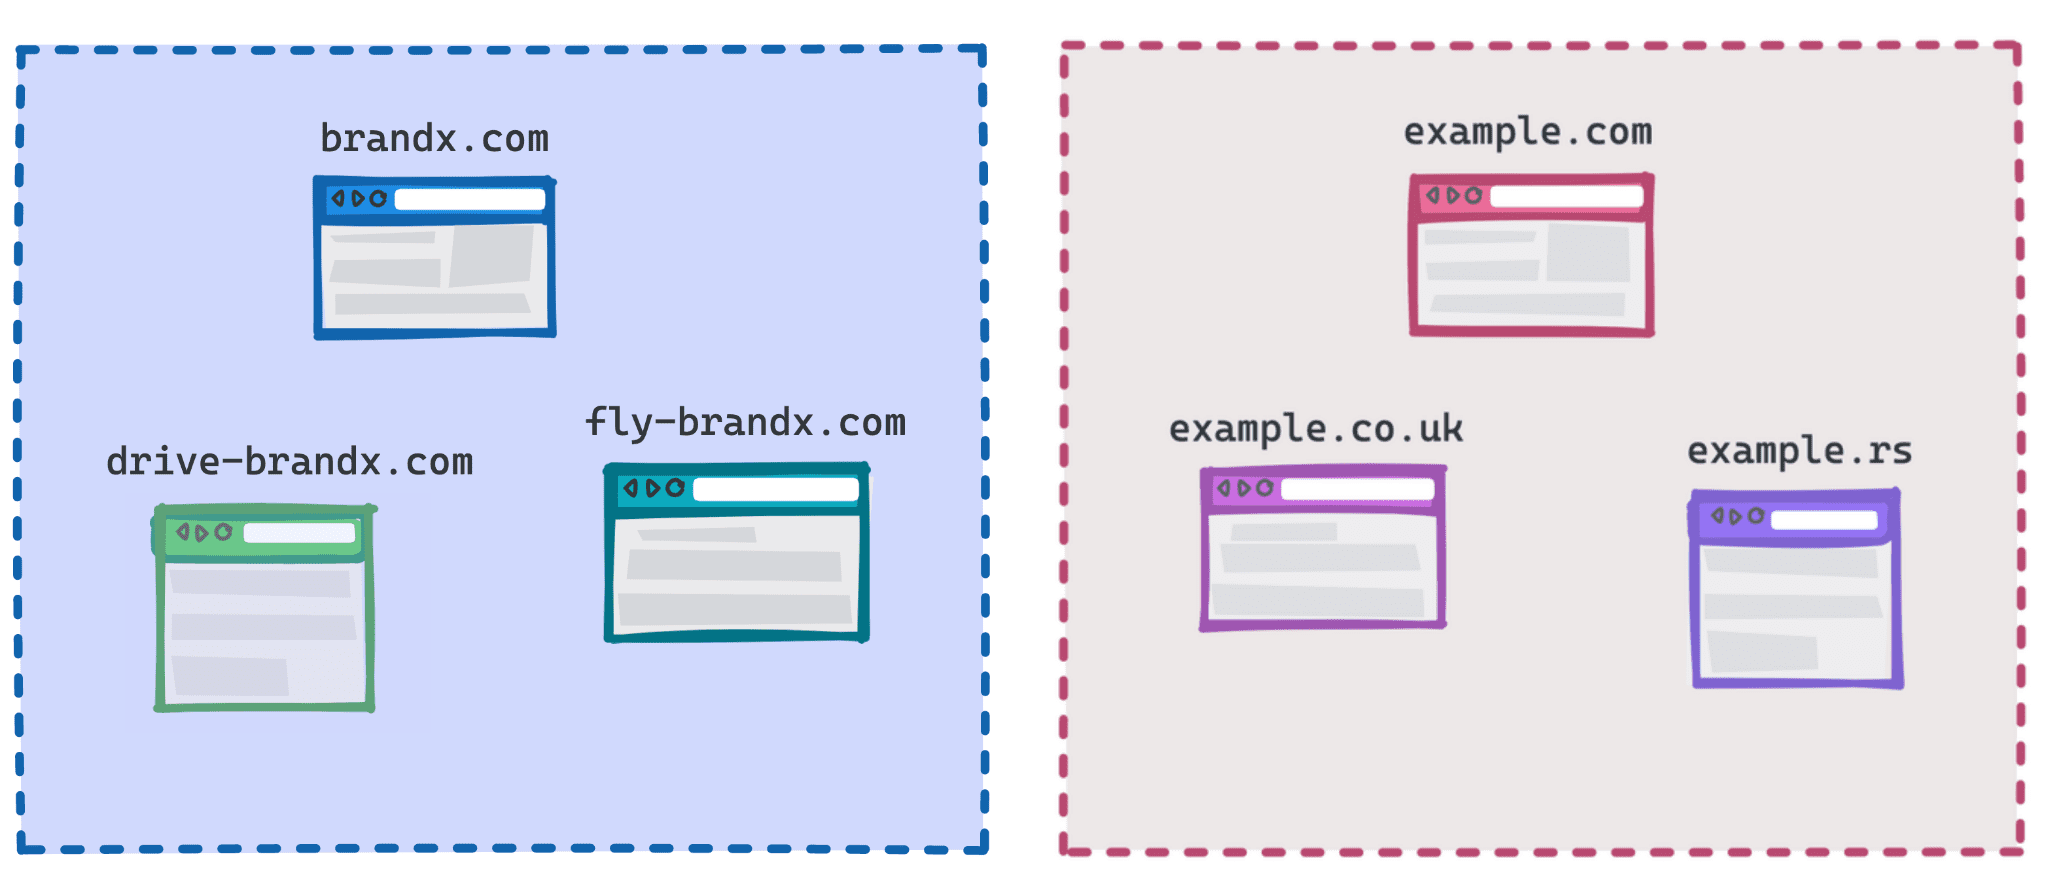 תרשים שמציג את brandx.com, fly-brandx.com ו-drive-brandx.com כקבוצה אחת, ואת example.com, example.rs, example.co.uk כקבוצה אחרת.